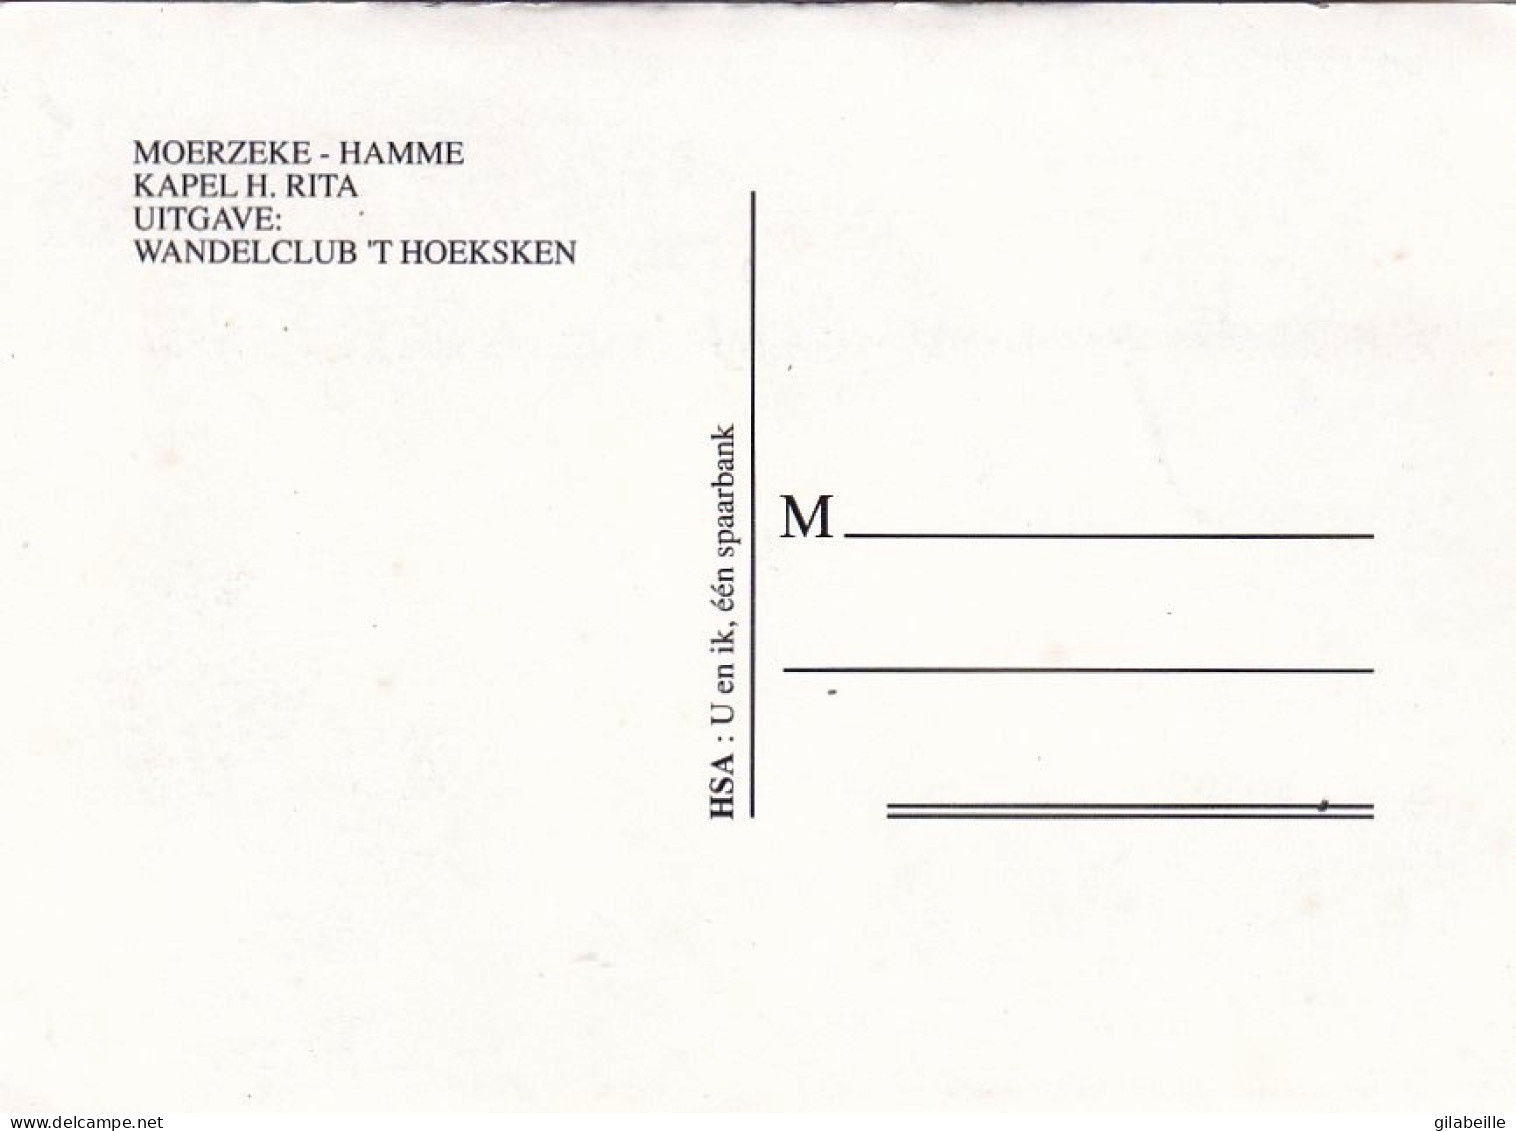 MOERZEKE - HAMME - Kapel H.Rita - Uitgave Wandelclub T Hoeksken - Hamme